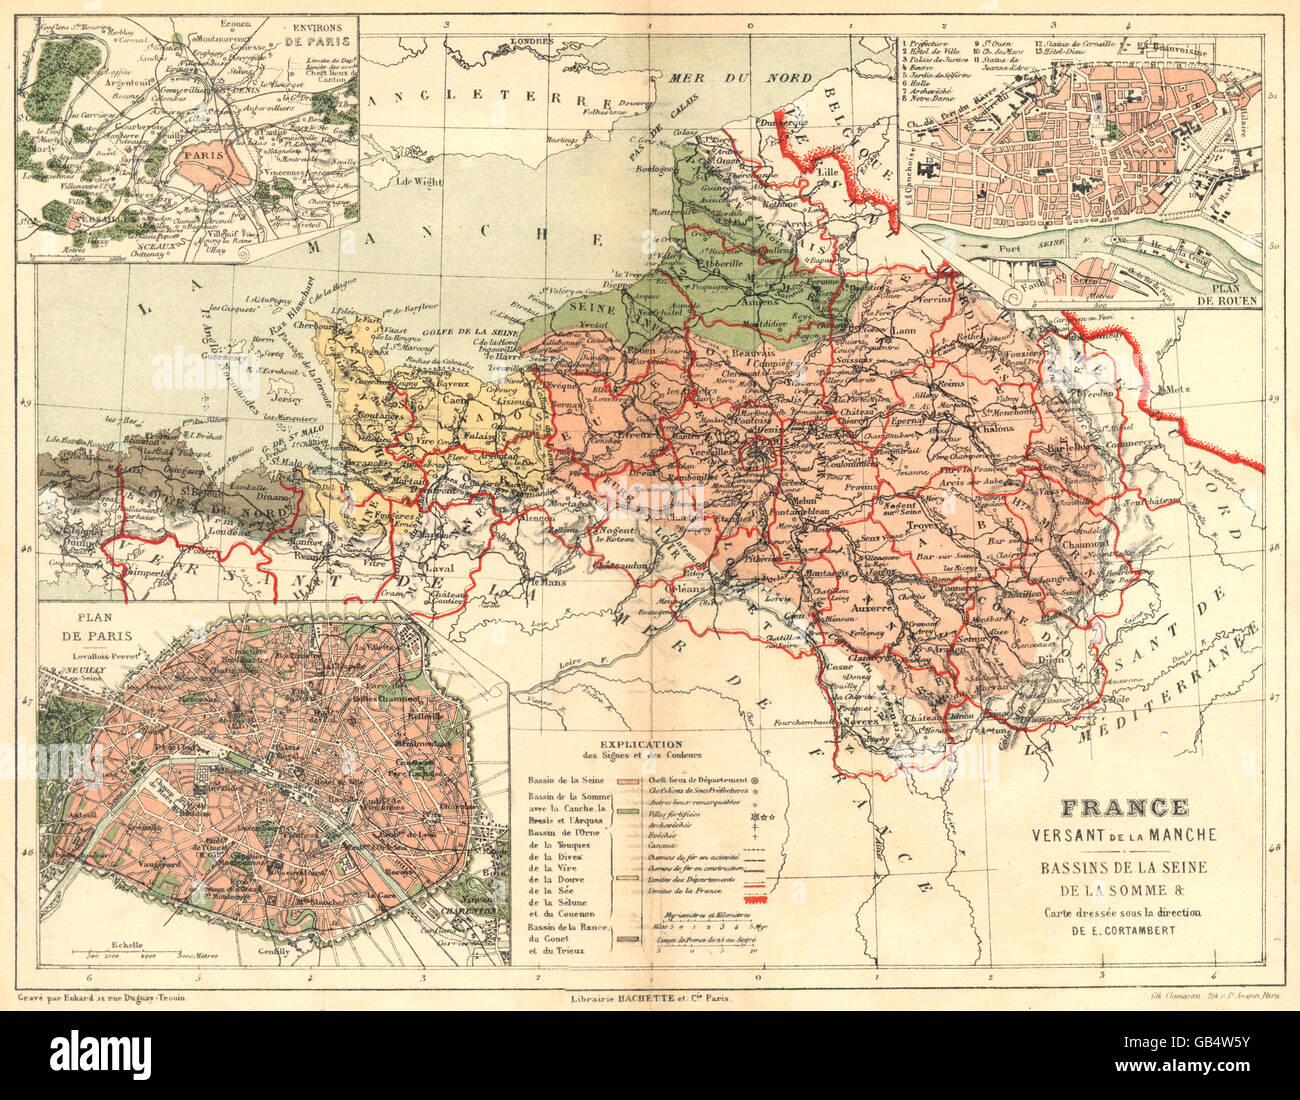 FRANCE: France Versant de la Manche Seine Somme; Paris; Rouen, 1880 old map Stock Photo